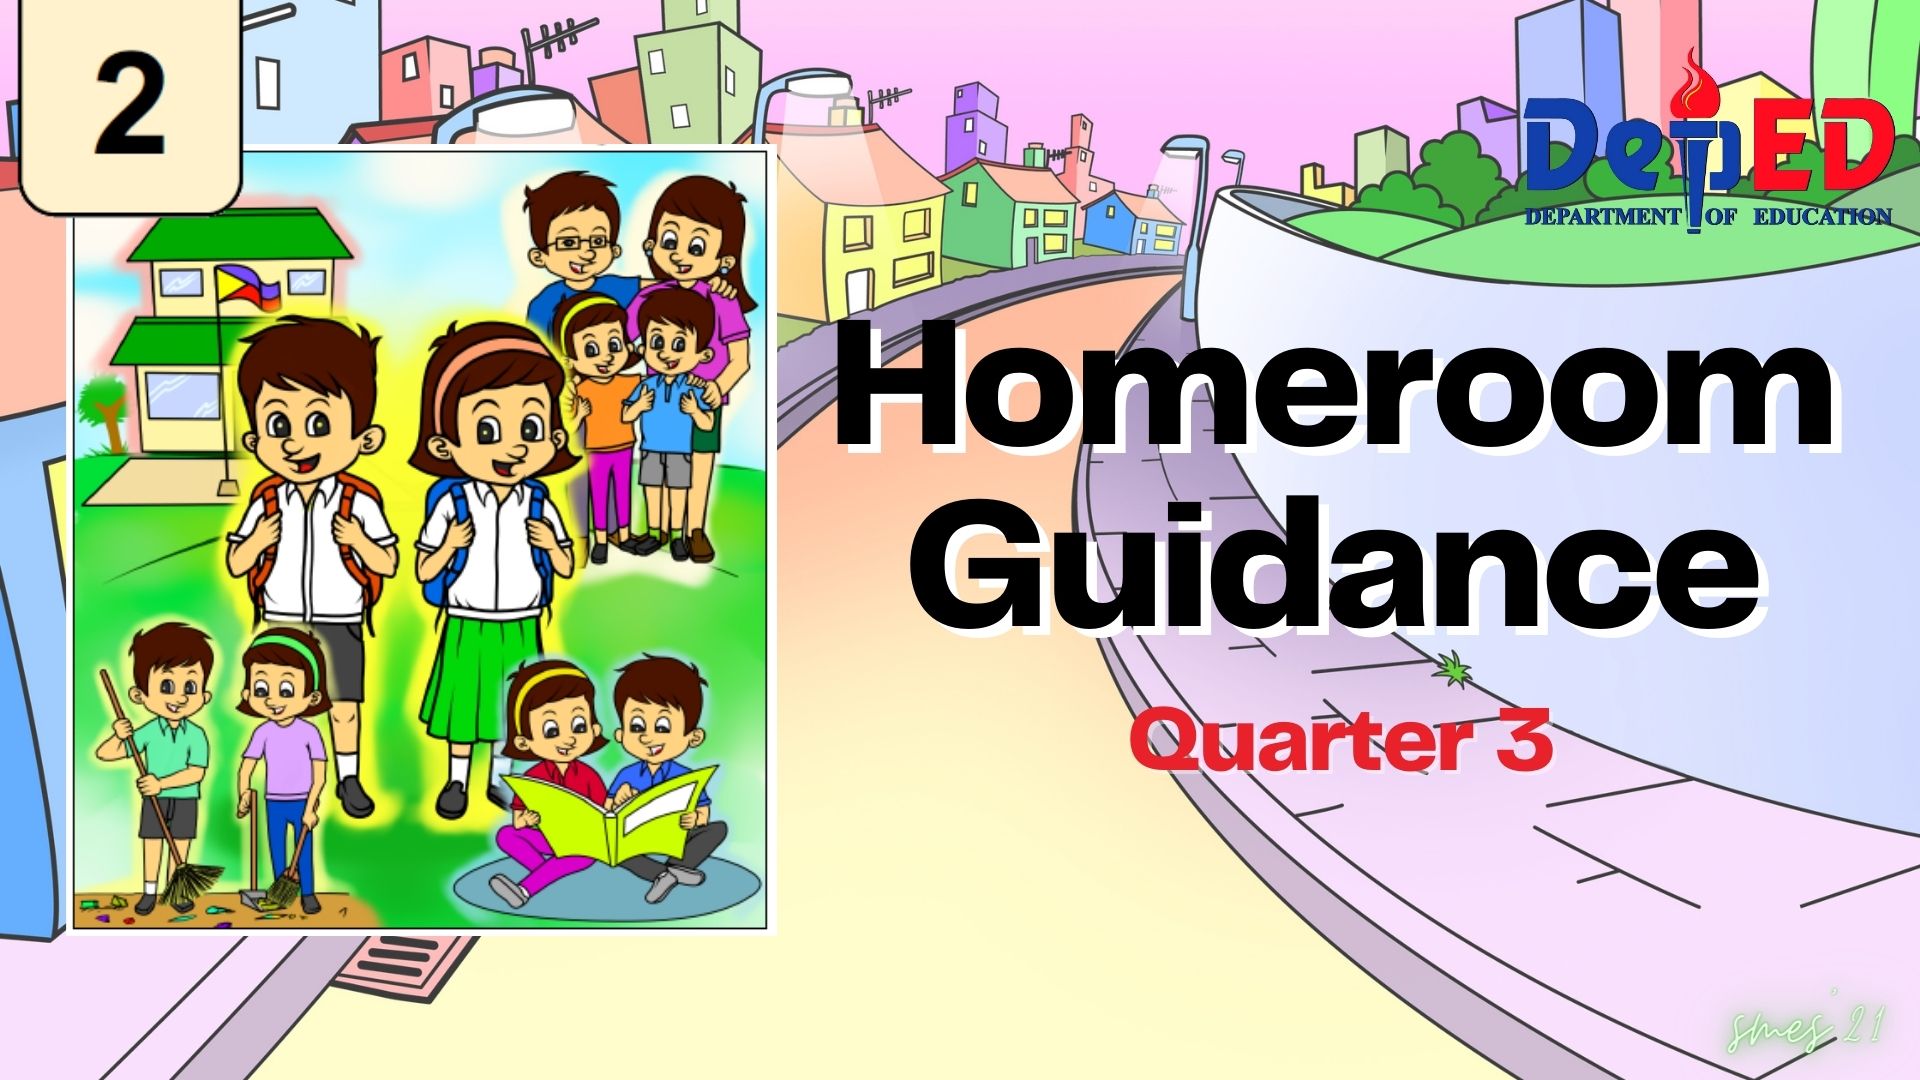 G2 - Homeroom Guidance Quarter 3 - GEPILA